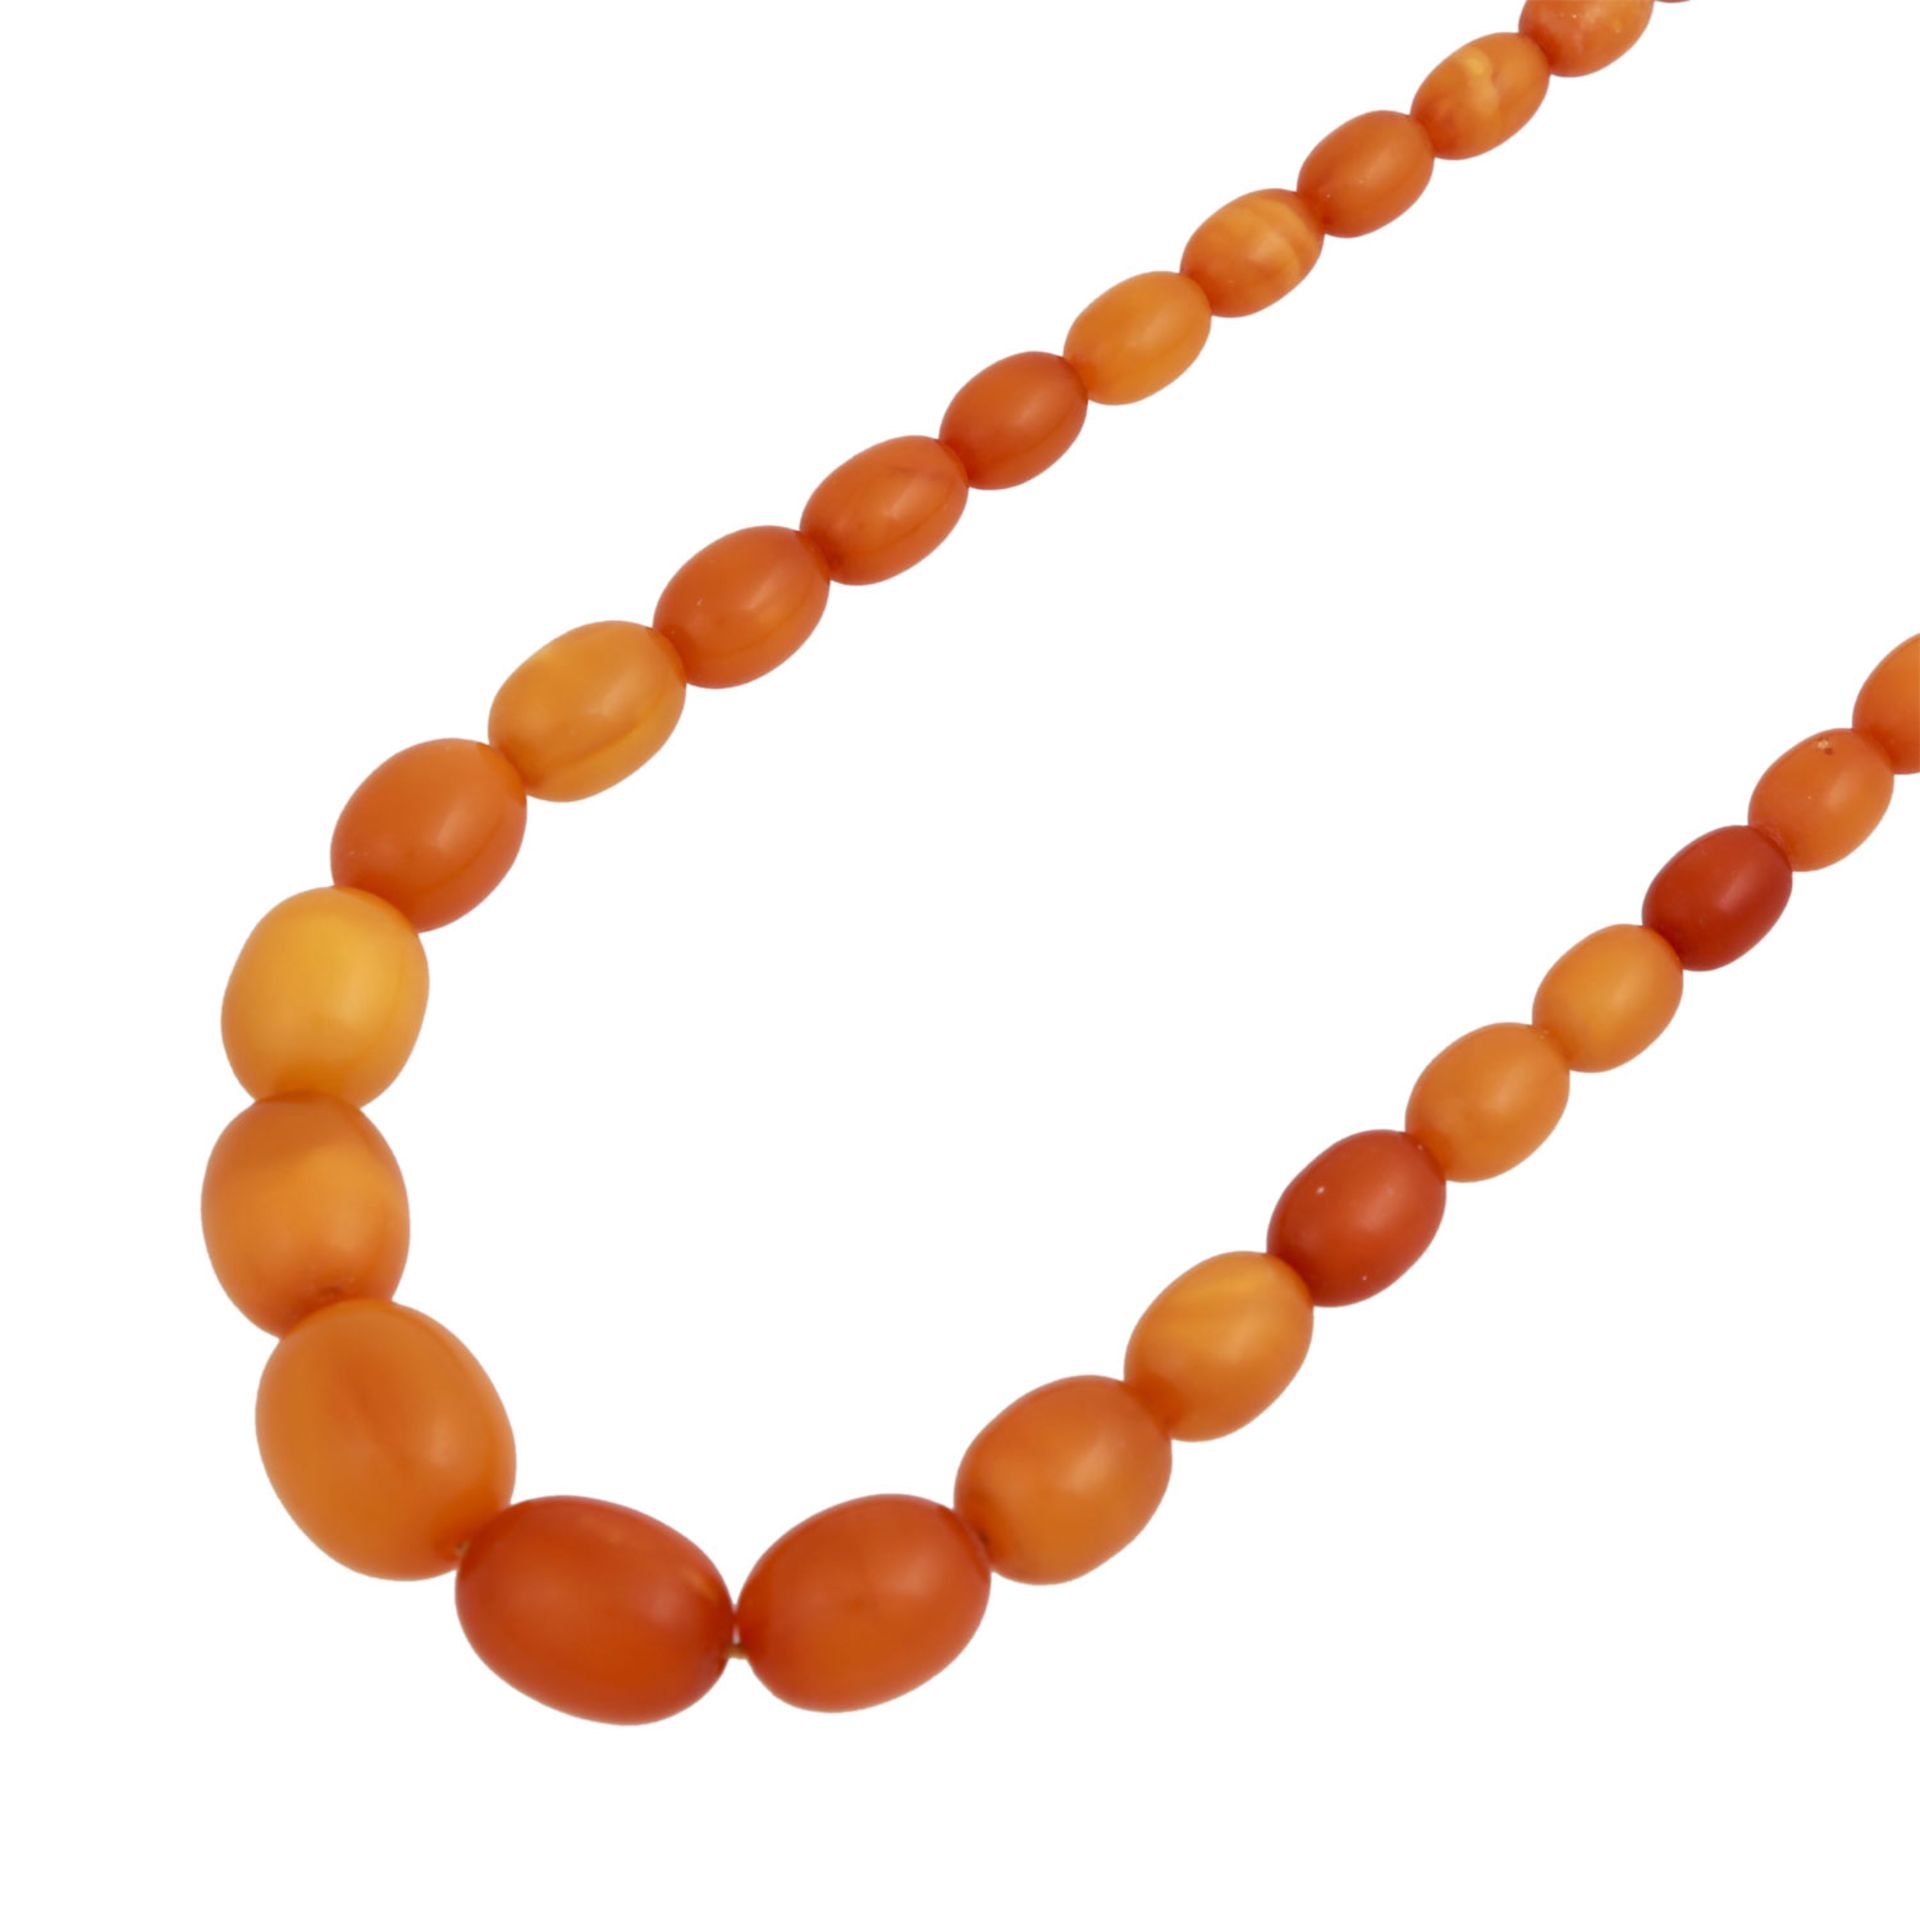 Bernsteinkette, olivenförmig im Verlauf,7-17 mm, L. ca. 50 cm, karamelfarben meliert, Karabiner GG 9 - Bild 4 aus 4